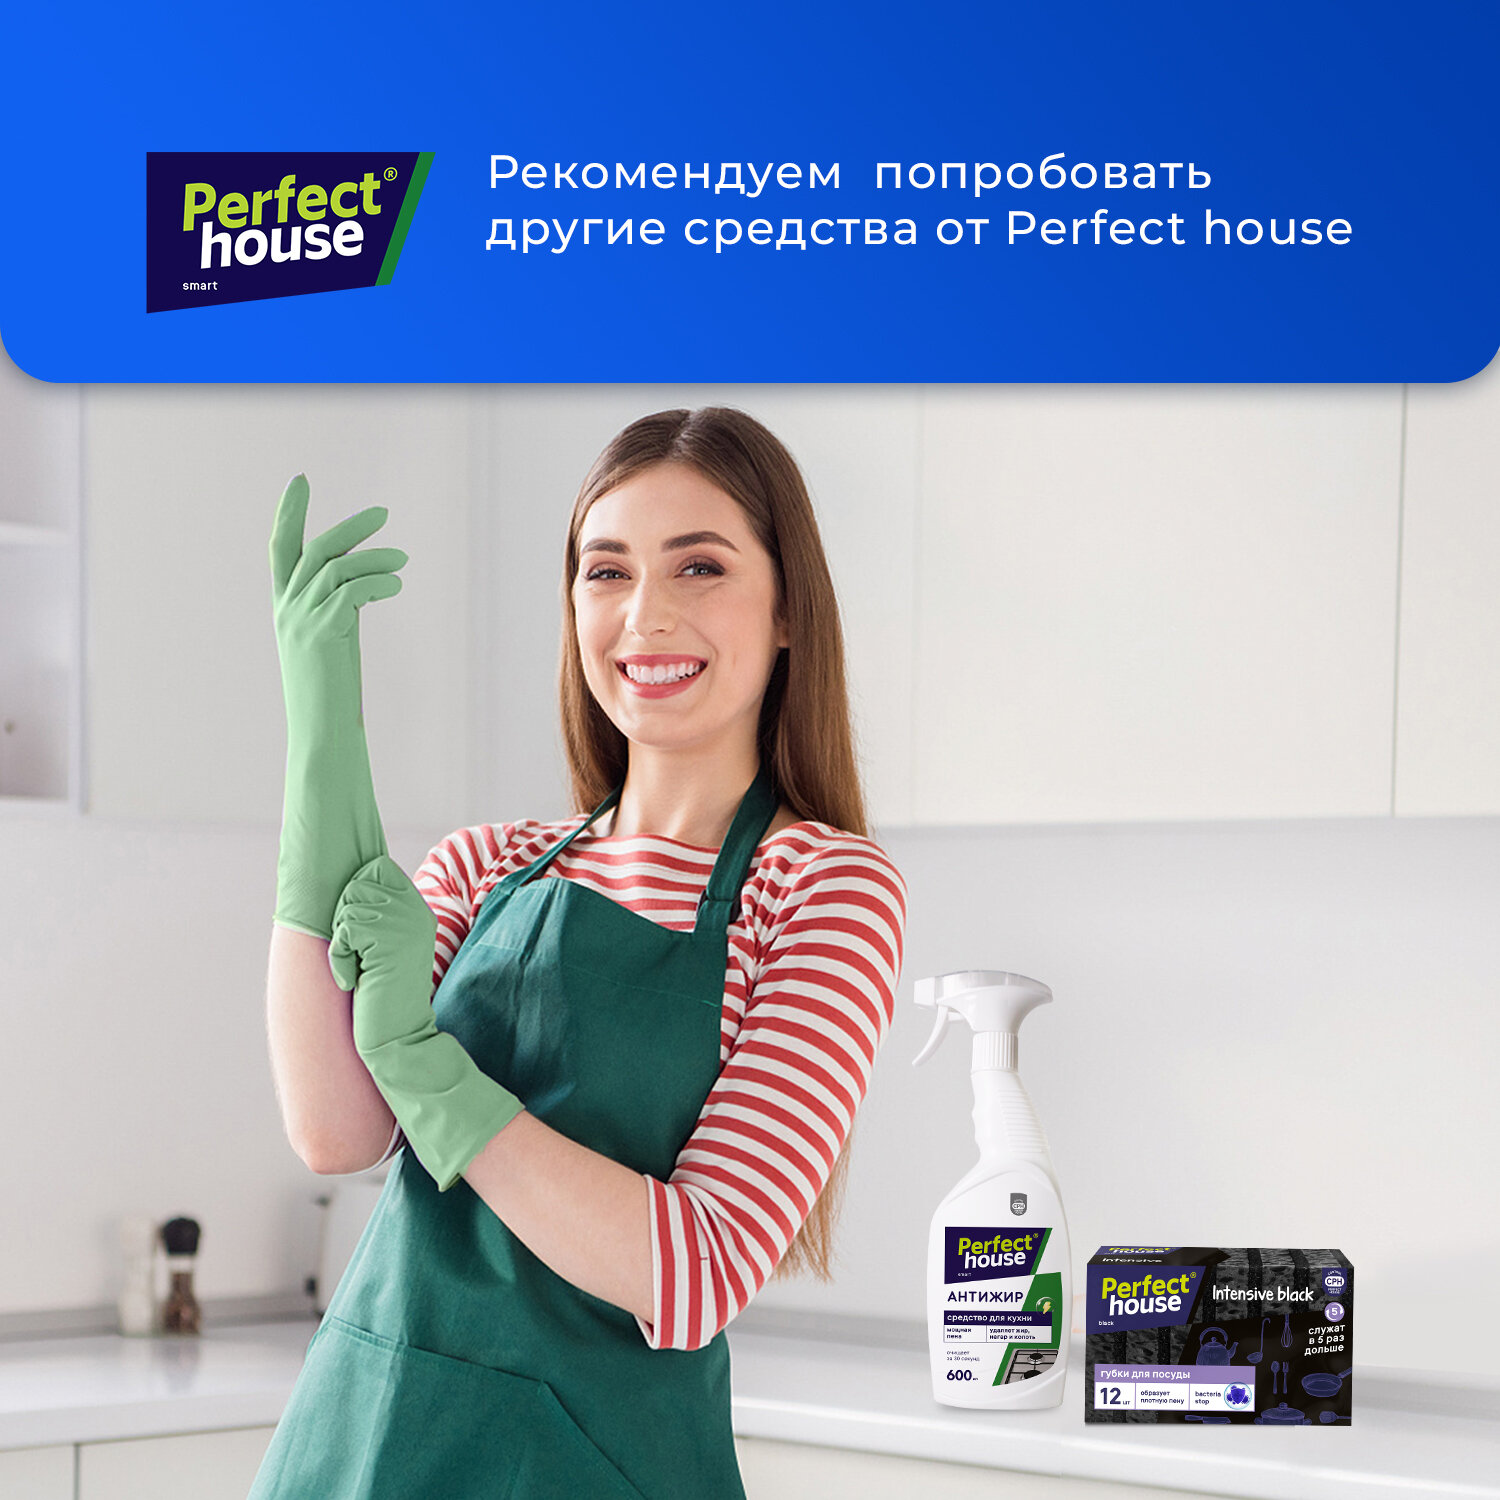 Перчатки для уборки Perfect House хозяйственные, резиновые из прочного латекса, размер S, 1 пара